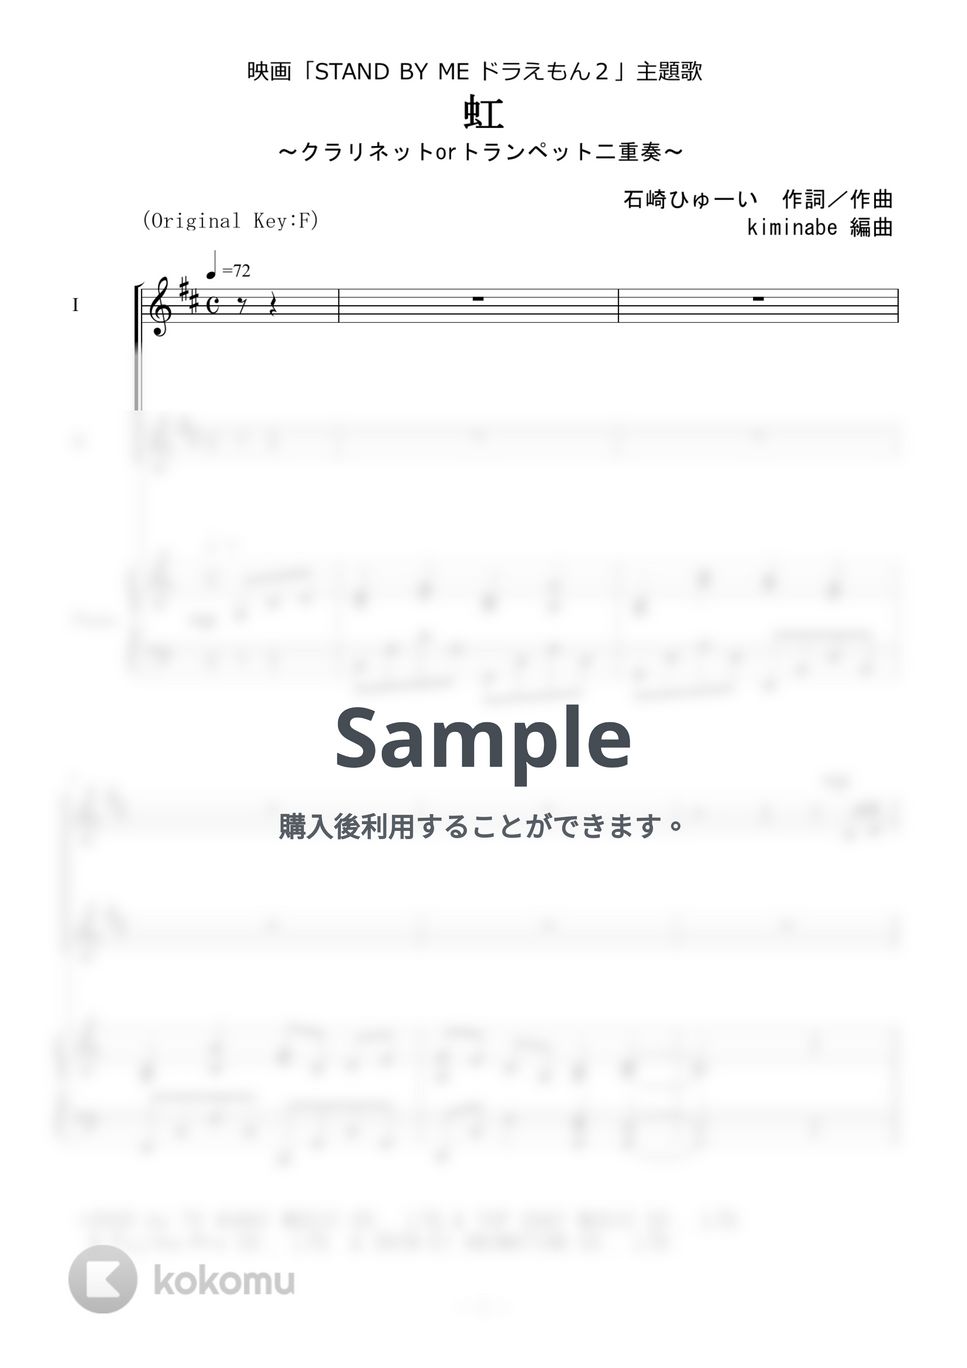 菅田将暉 - 虹 (クラリネットorトランペット二重奏) by kiminabe